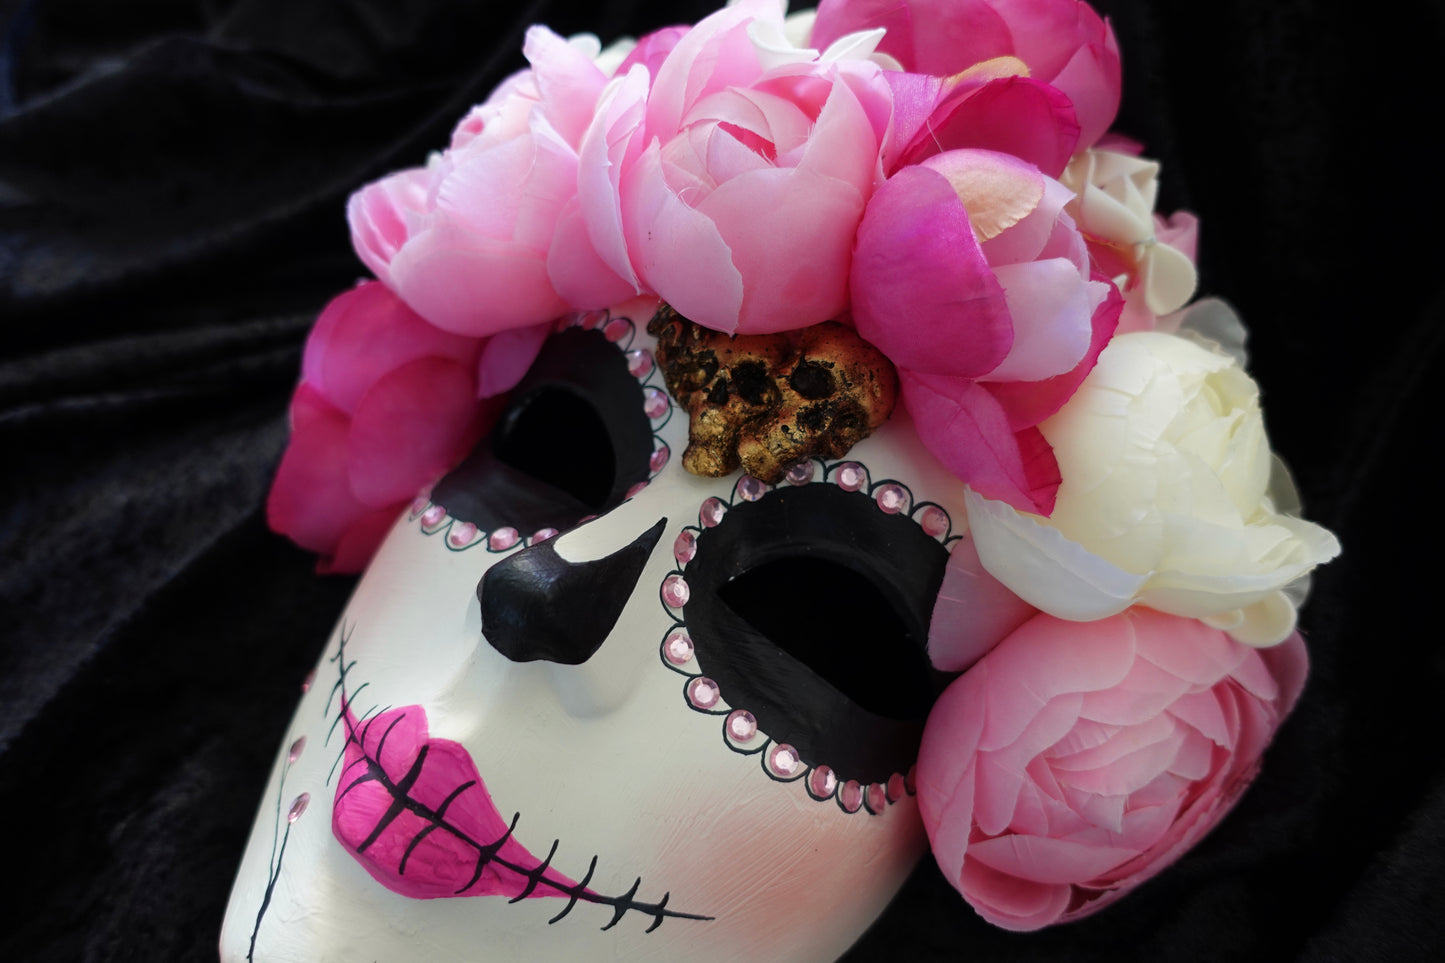 Maschera Caterina modello originale del giorno della morte in Messico